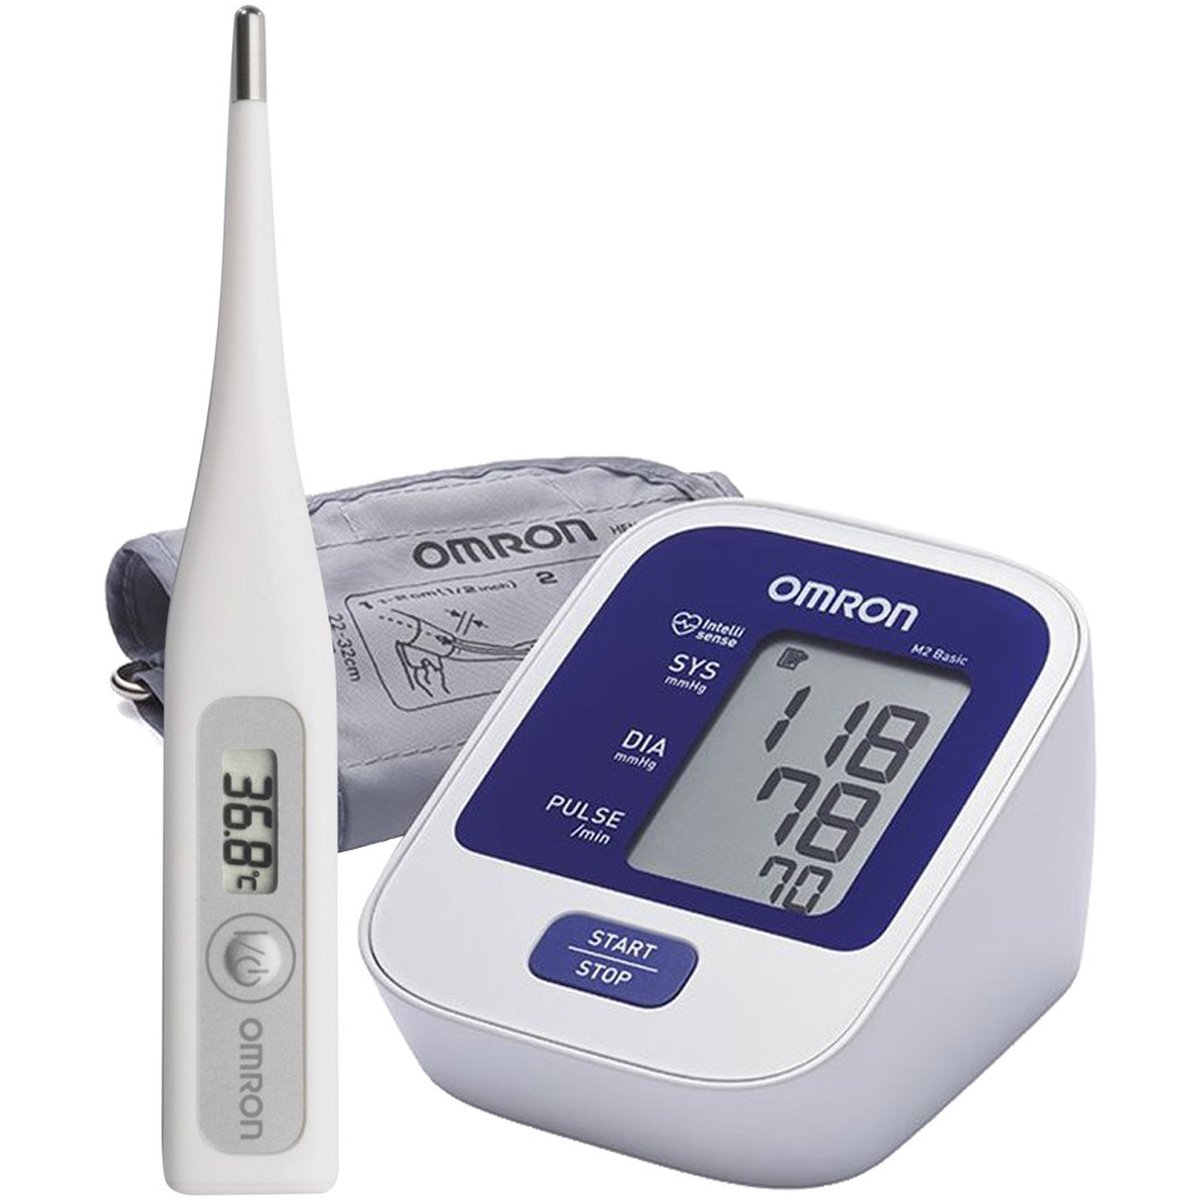 أومرون جهاز قياس ضغط الدم M2 Basic + شاحن لجهاز M2 Basic + أمرون مقياس الحرارة رقمي Eco Temp Basic